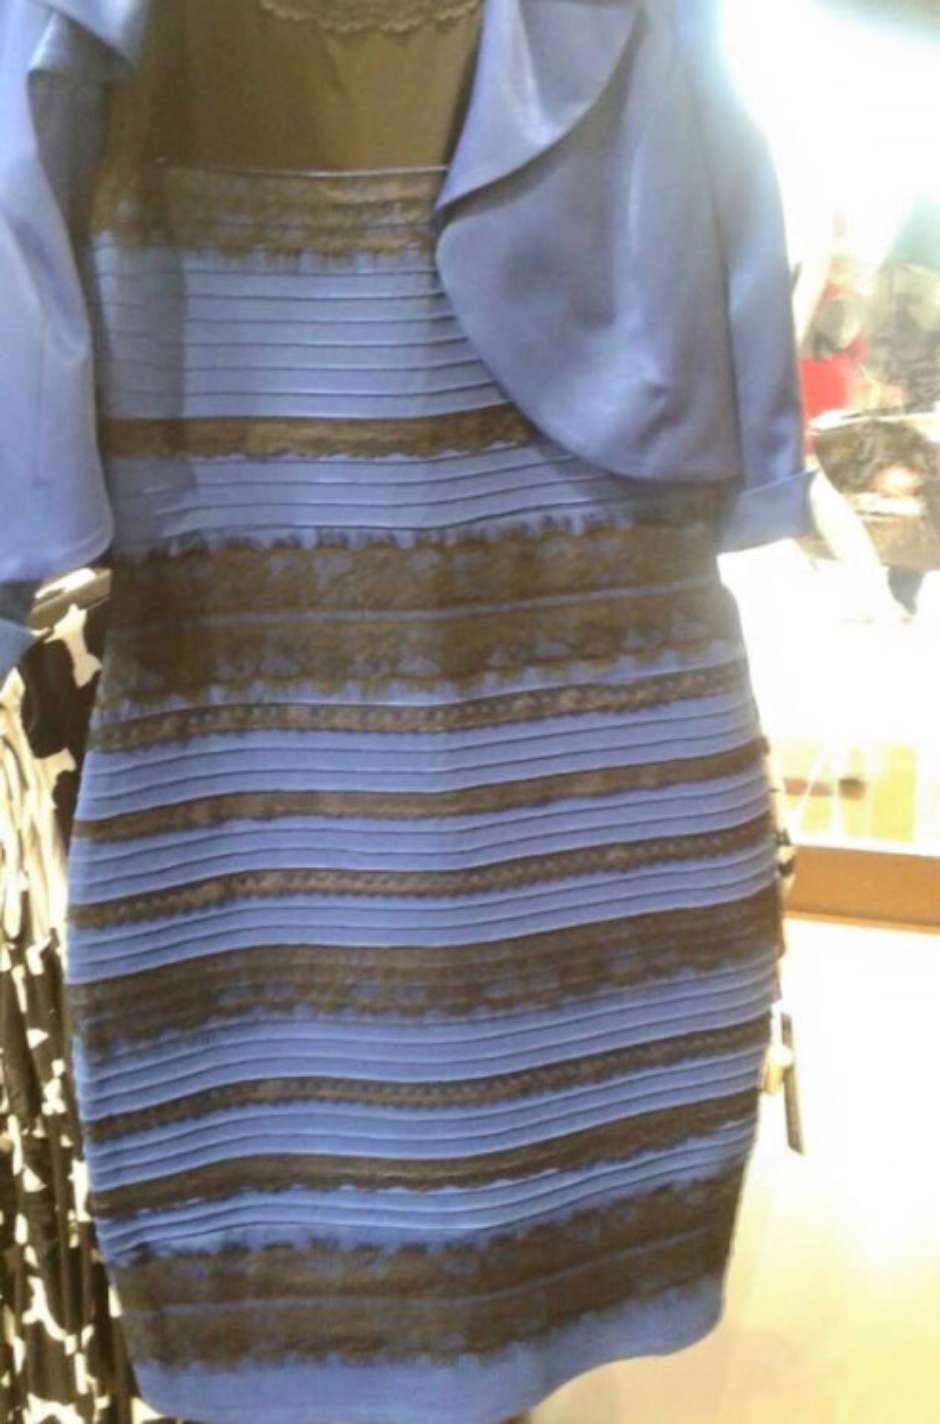 Pouch protection comment Qual a cor do vestido que gerou tanta polêmica na internet?